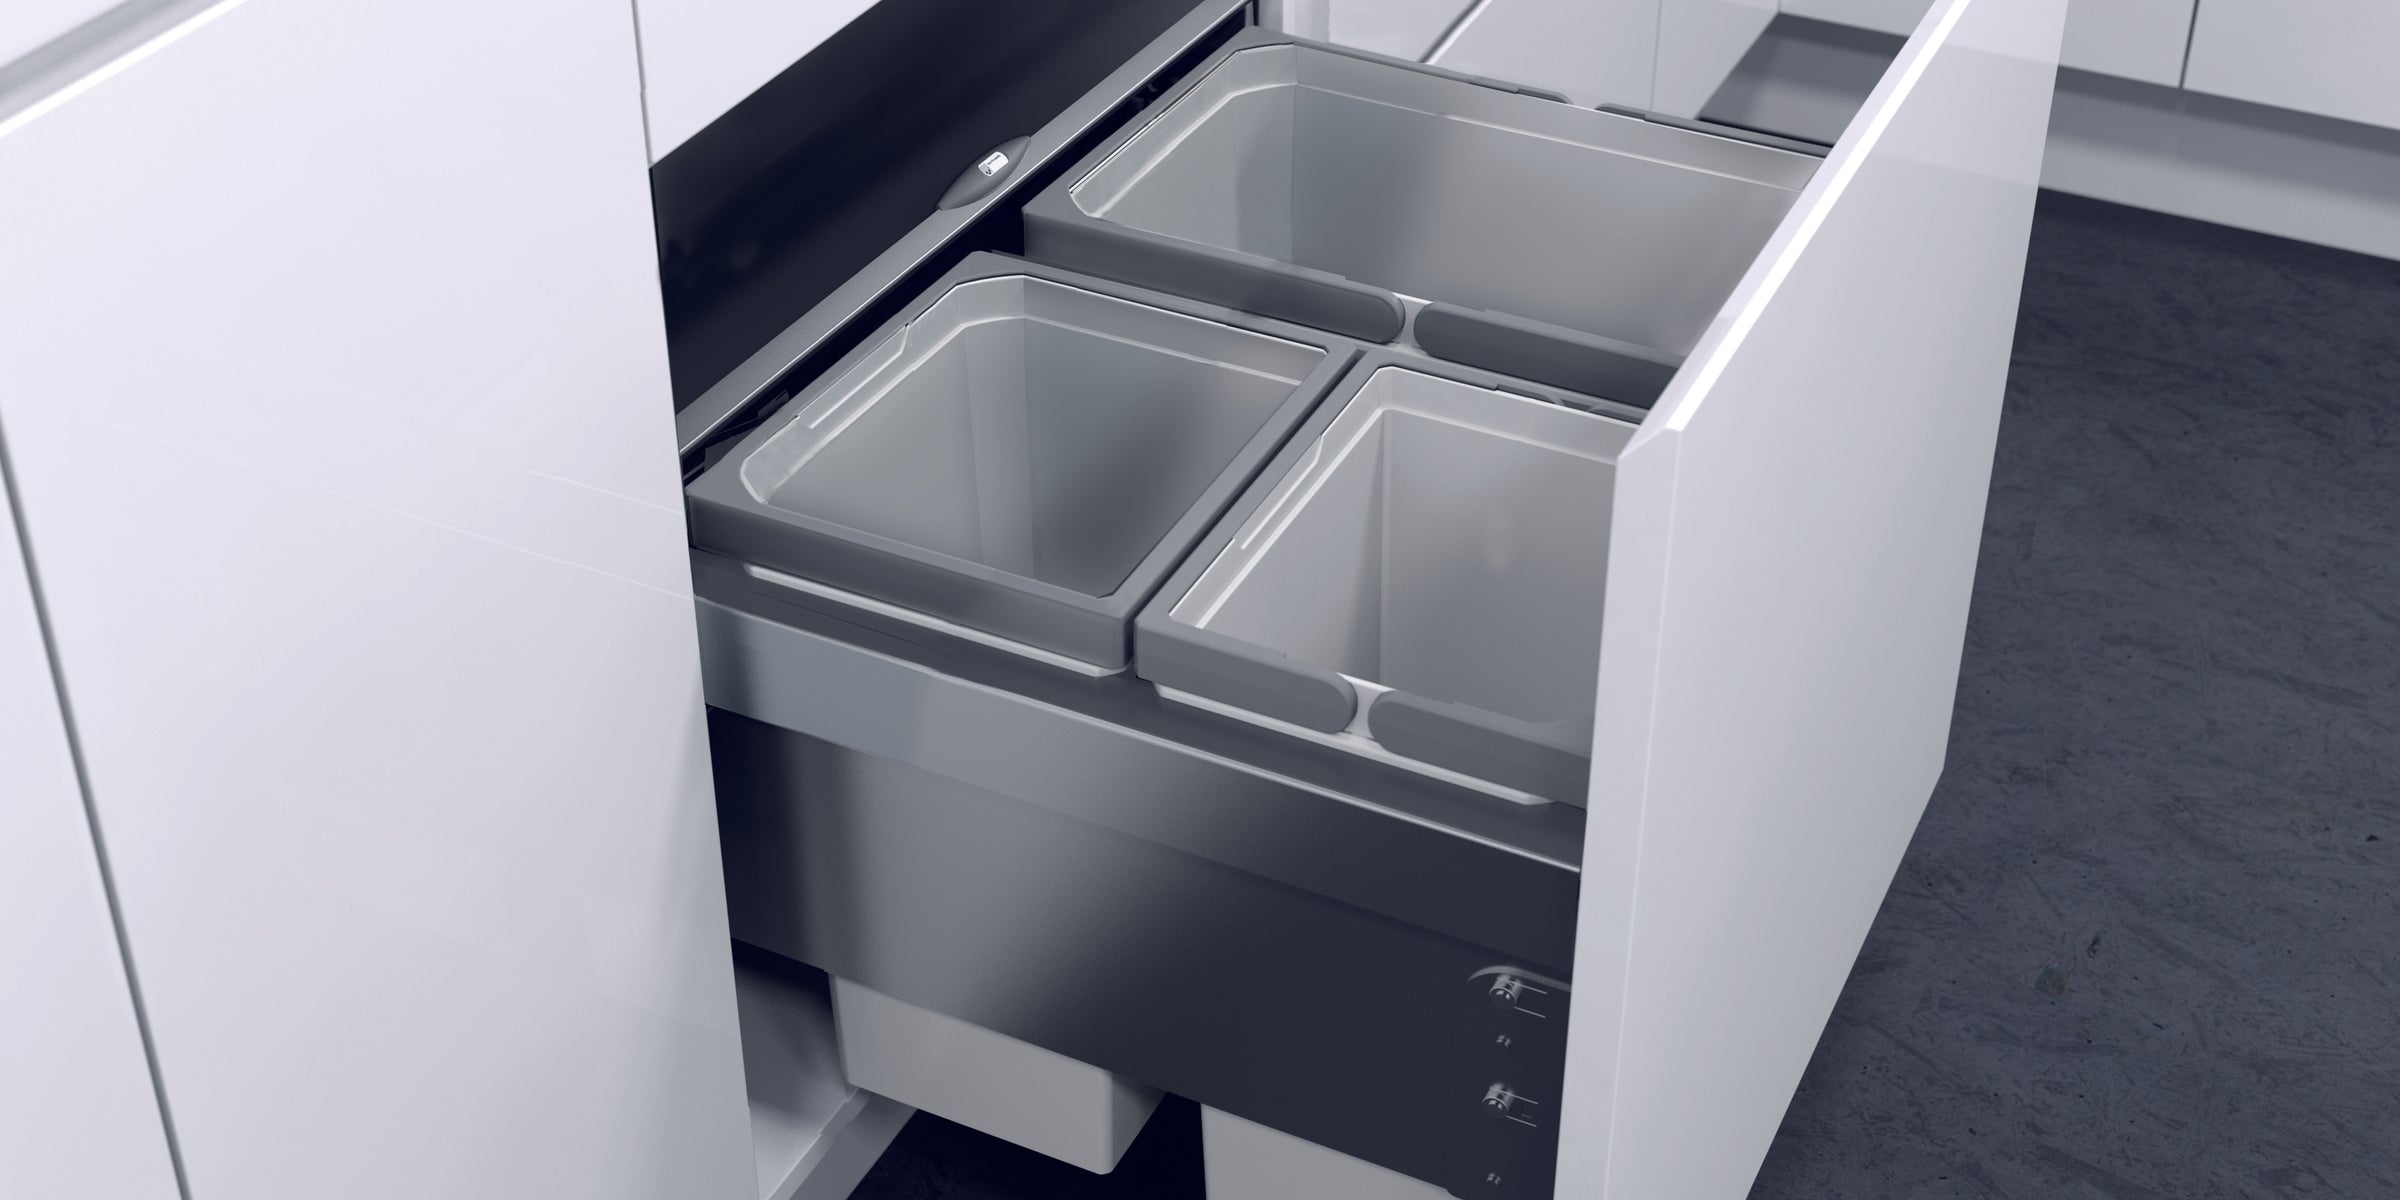 Vauth-Sagel In-Cupboard bin, installed in a white modern kitchen